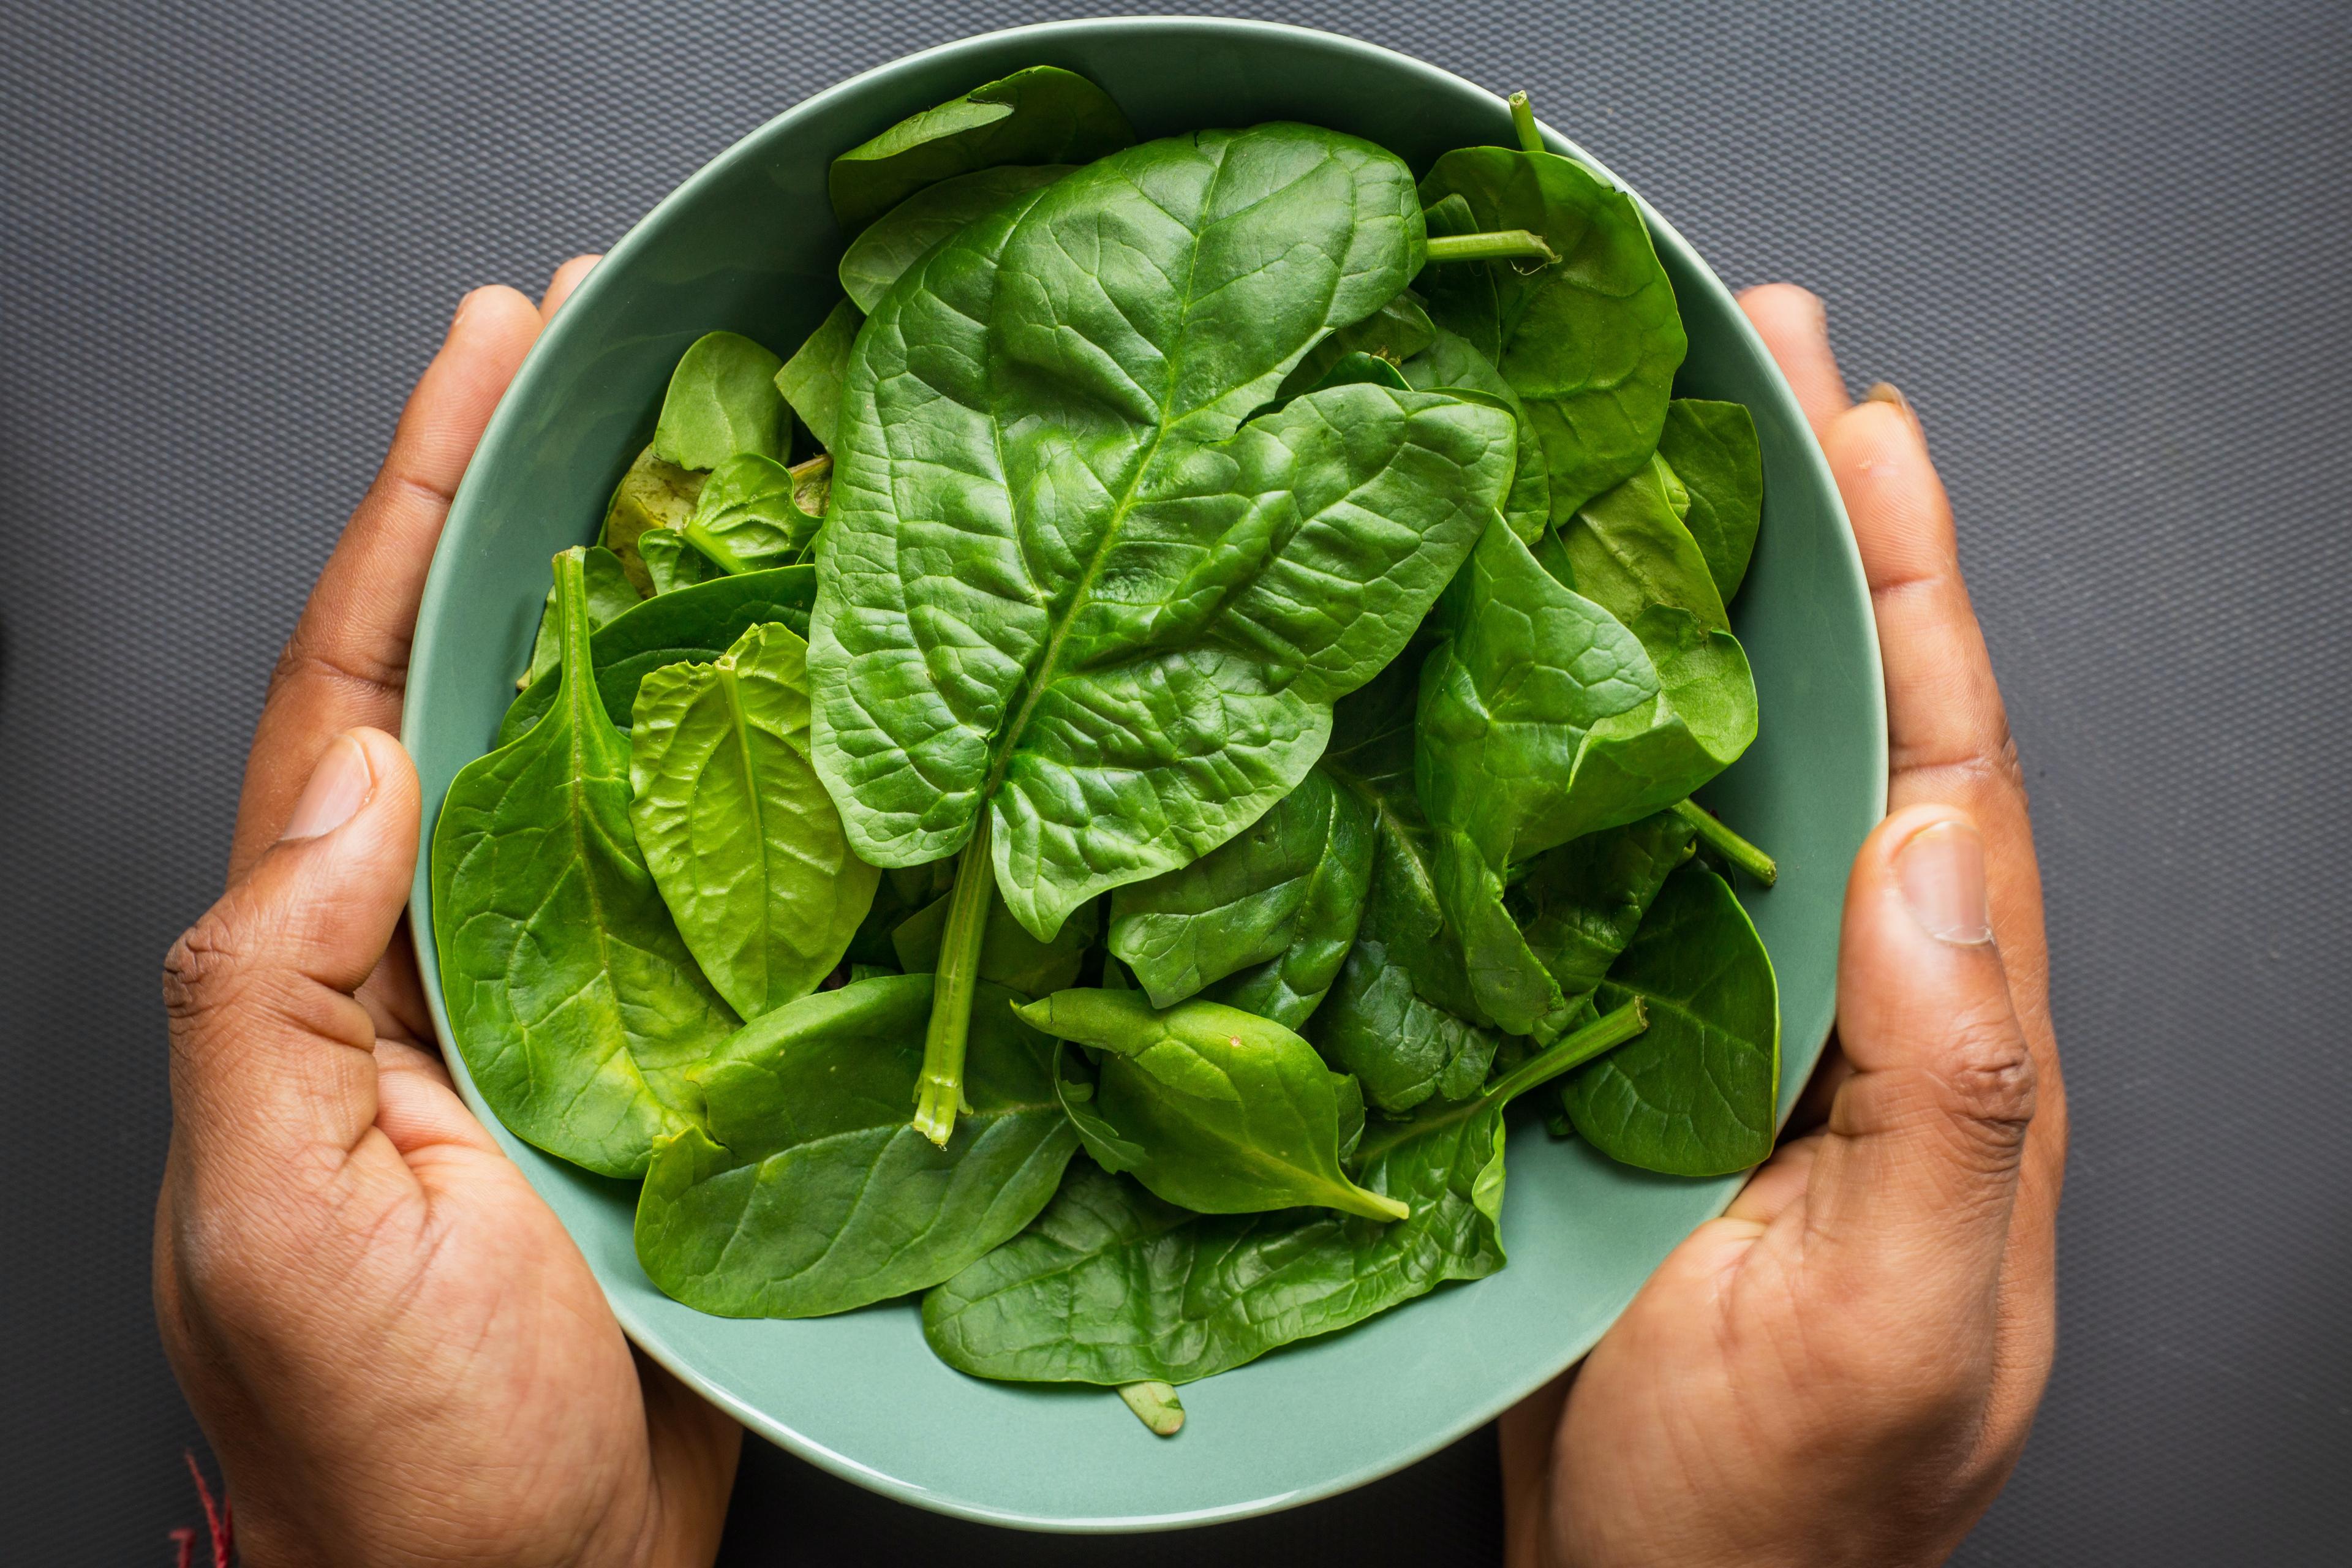 Szpinak - Zielone warzywo pełne składników odżywczych i korzyści dla organizmu. Szpinak – właściwości odżywcze i zdrowotne. Dlaczego warto jeść szpinak i inne warzywa sezonowe? Potrawy ze szpinakiem 